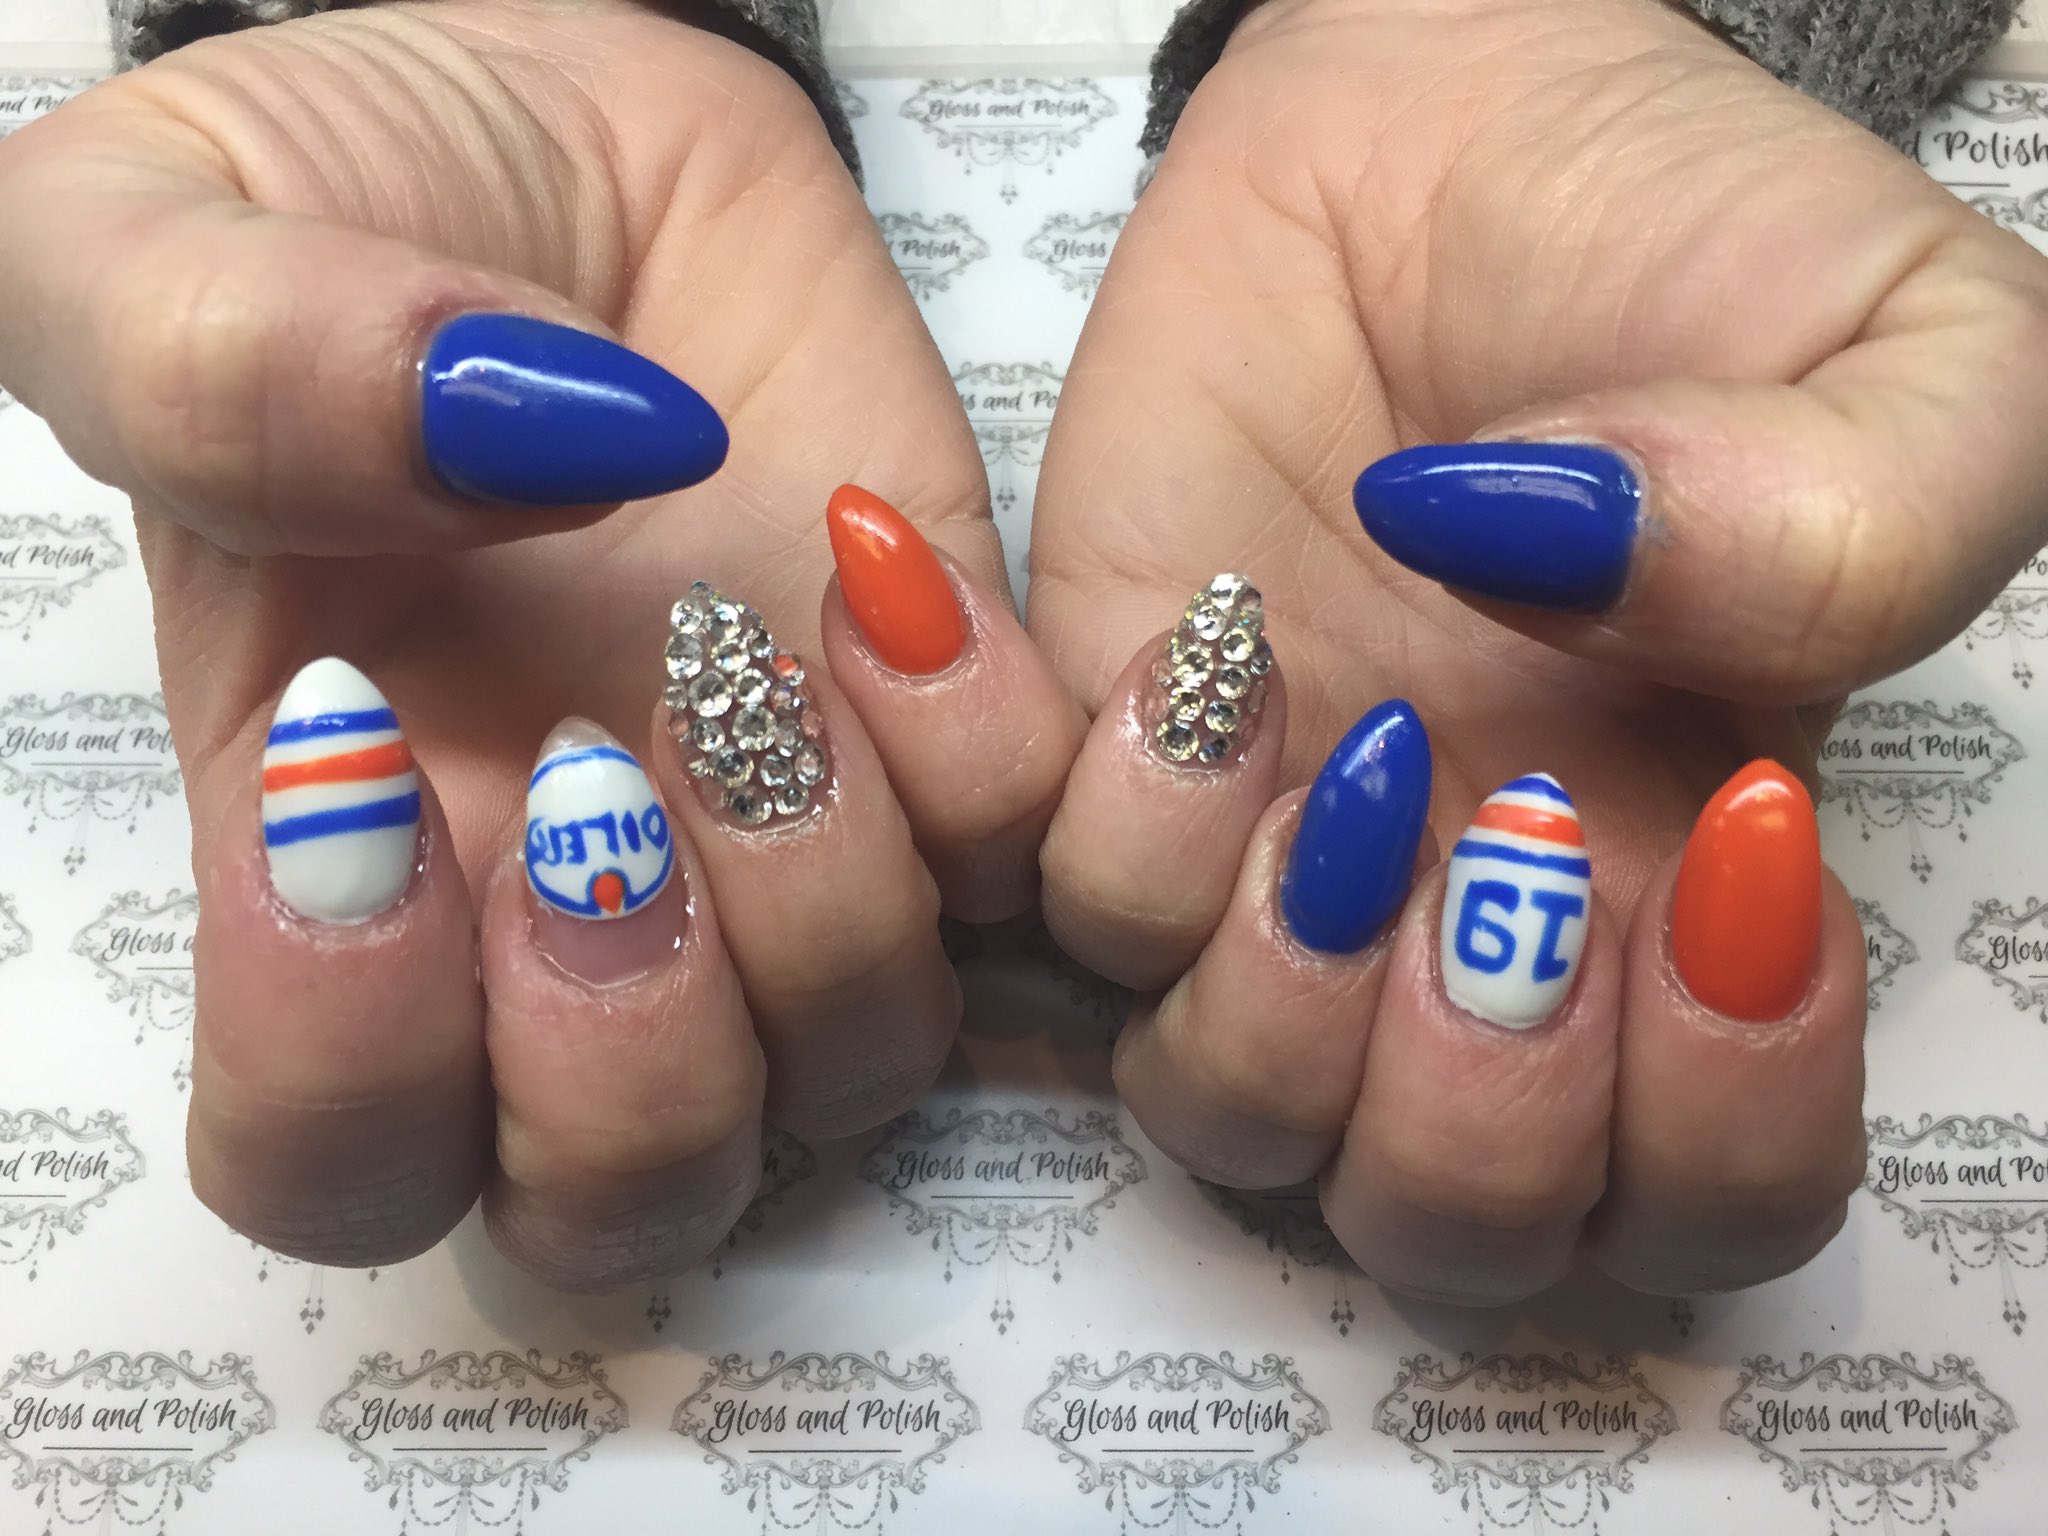 Edmonton Oilers nails  Nails, Oilers, Edmonton oilers